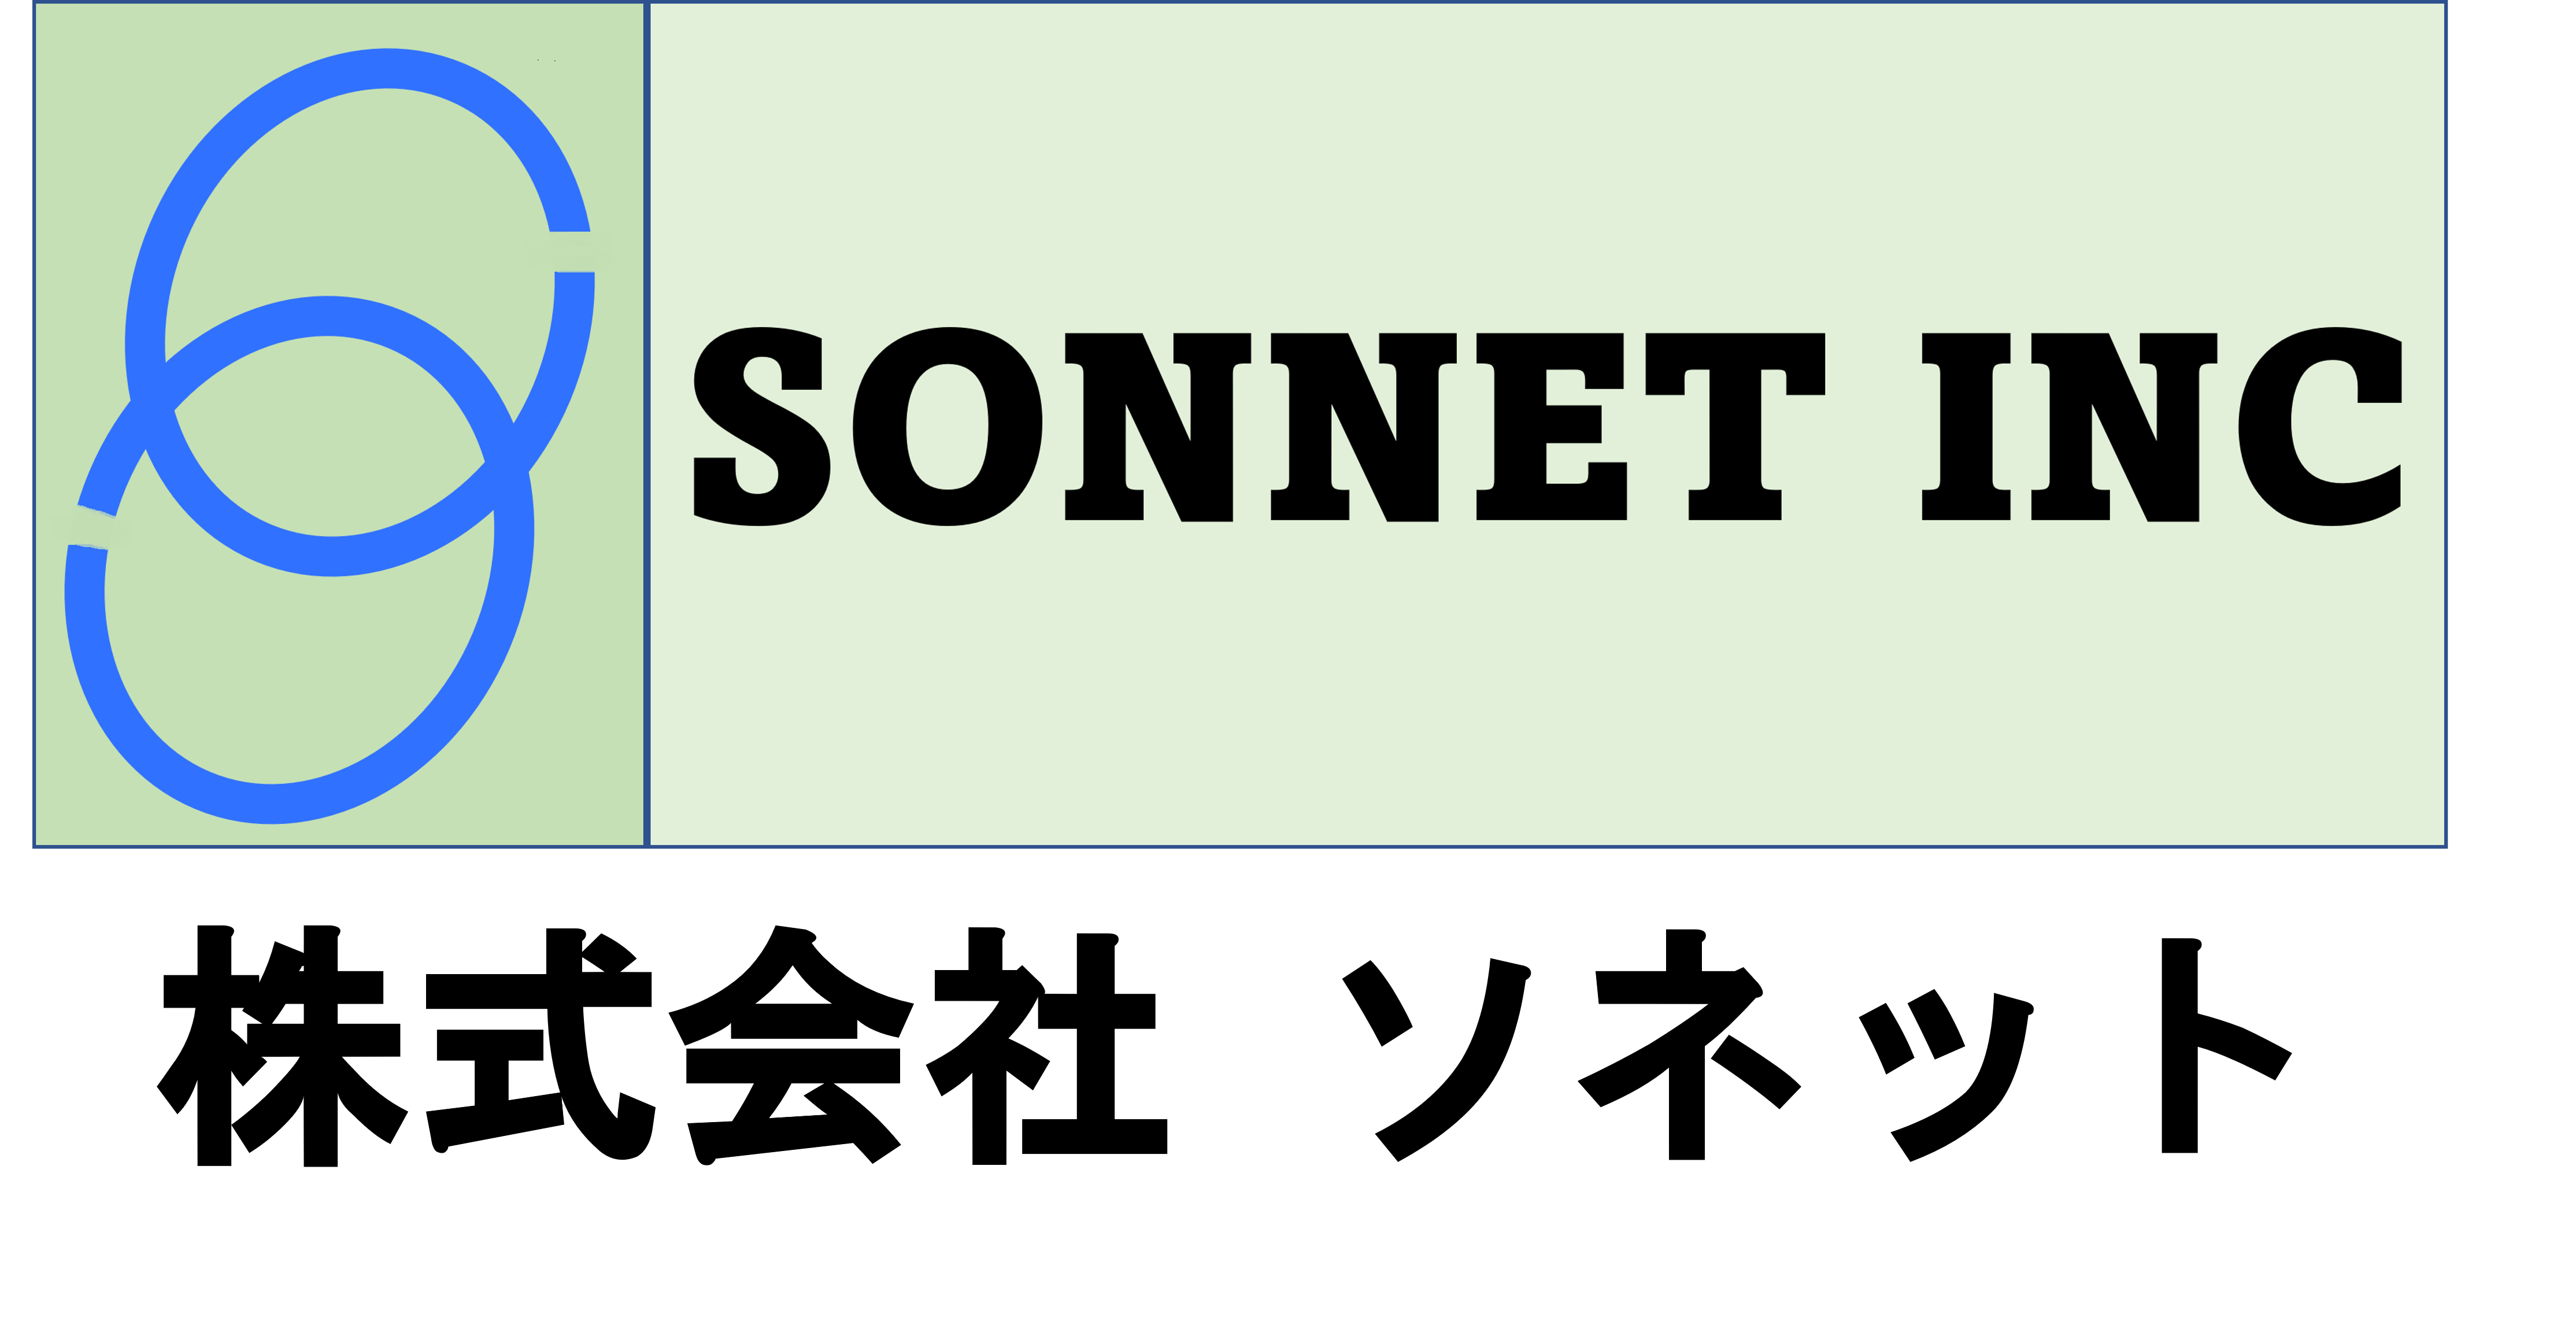 SONNET INC.